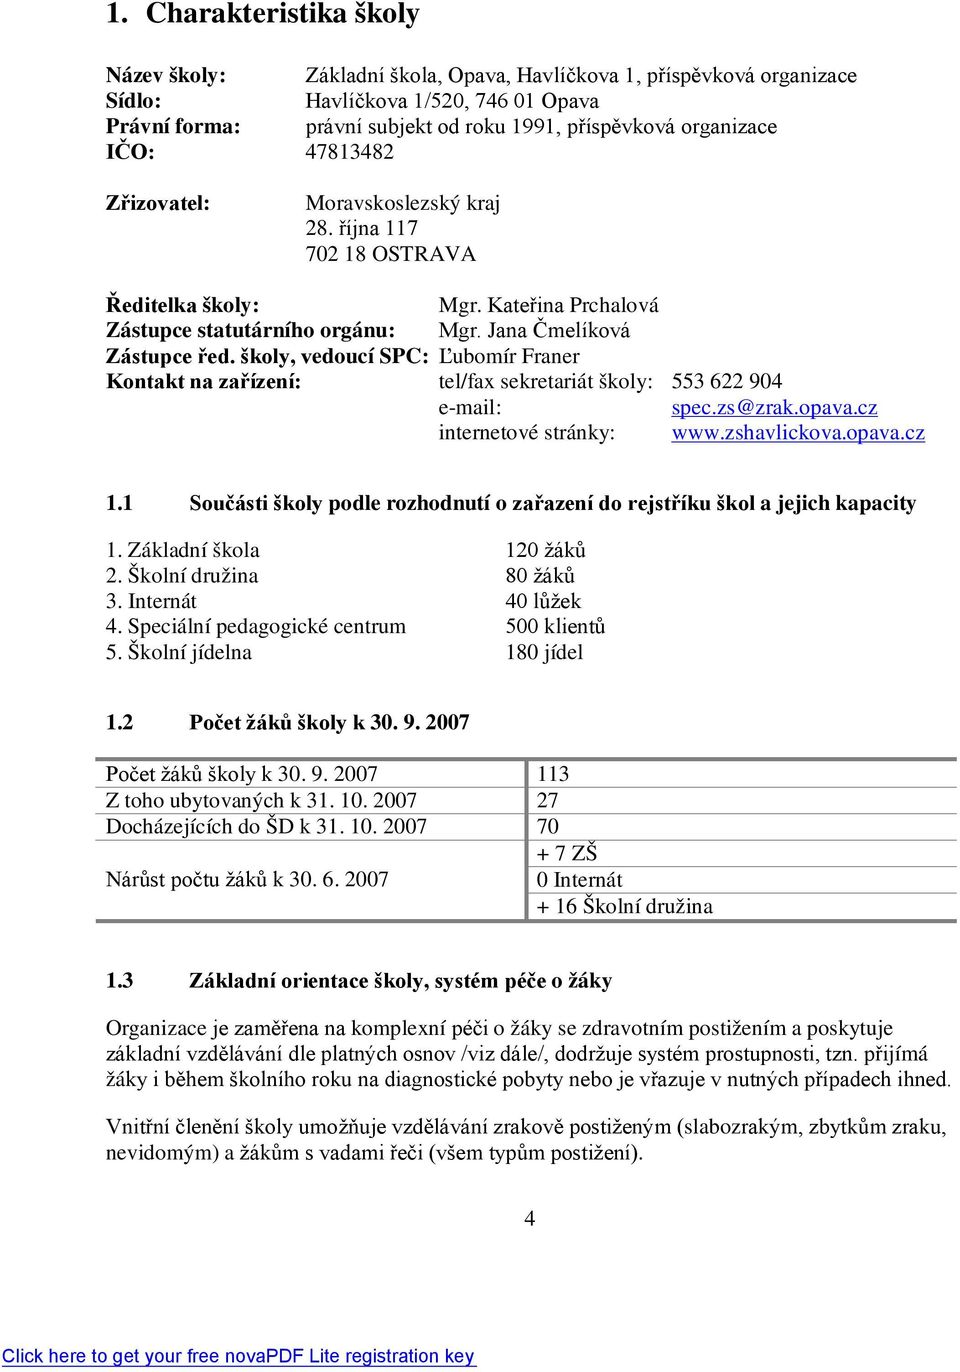 školy, vedoucí SPC: Ľubomír Franer Kontakt na zařízení: tel/fax sekretariát školy: 553 622 904 e-mail: spec.zs@zrak.opava.cz internetové stránky: www.zshavlickova.opava.cz 1.